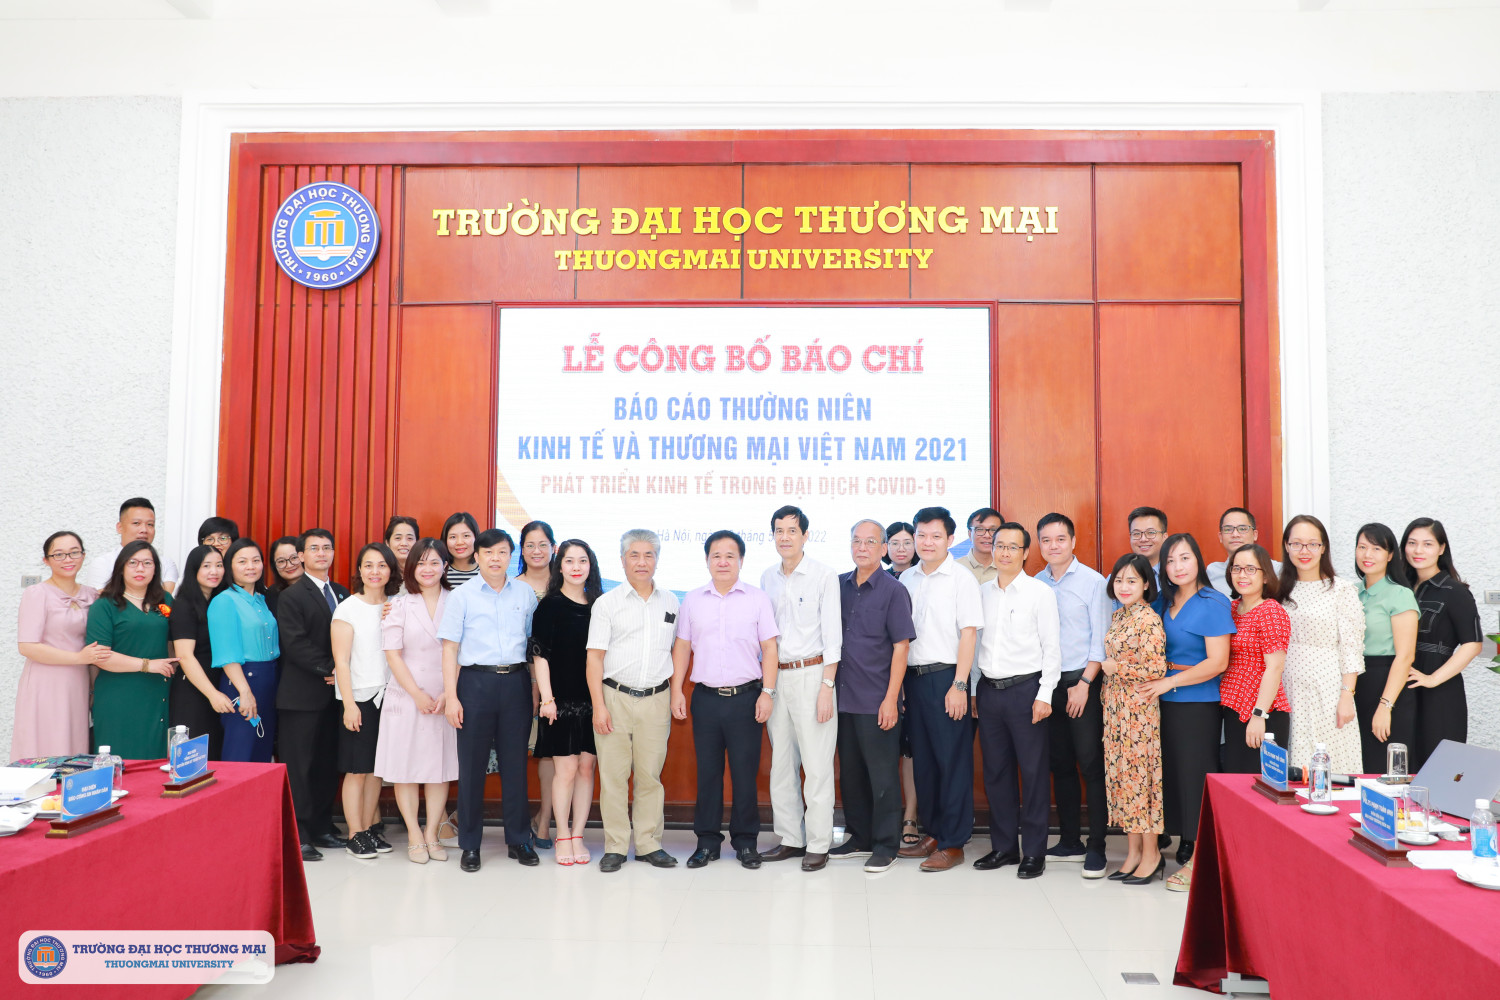 Hội thảo công bố Báo cáo thường niên Kinh tế và Thương mại Việt Nam 2021: “Phát triển kinh tế trong đại dịch COVID-19”